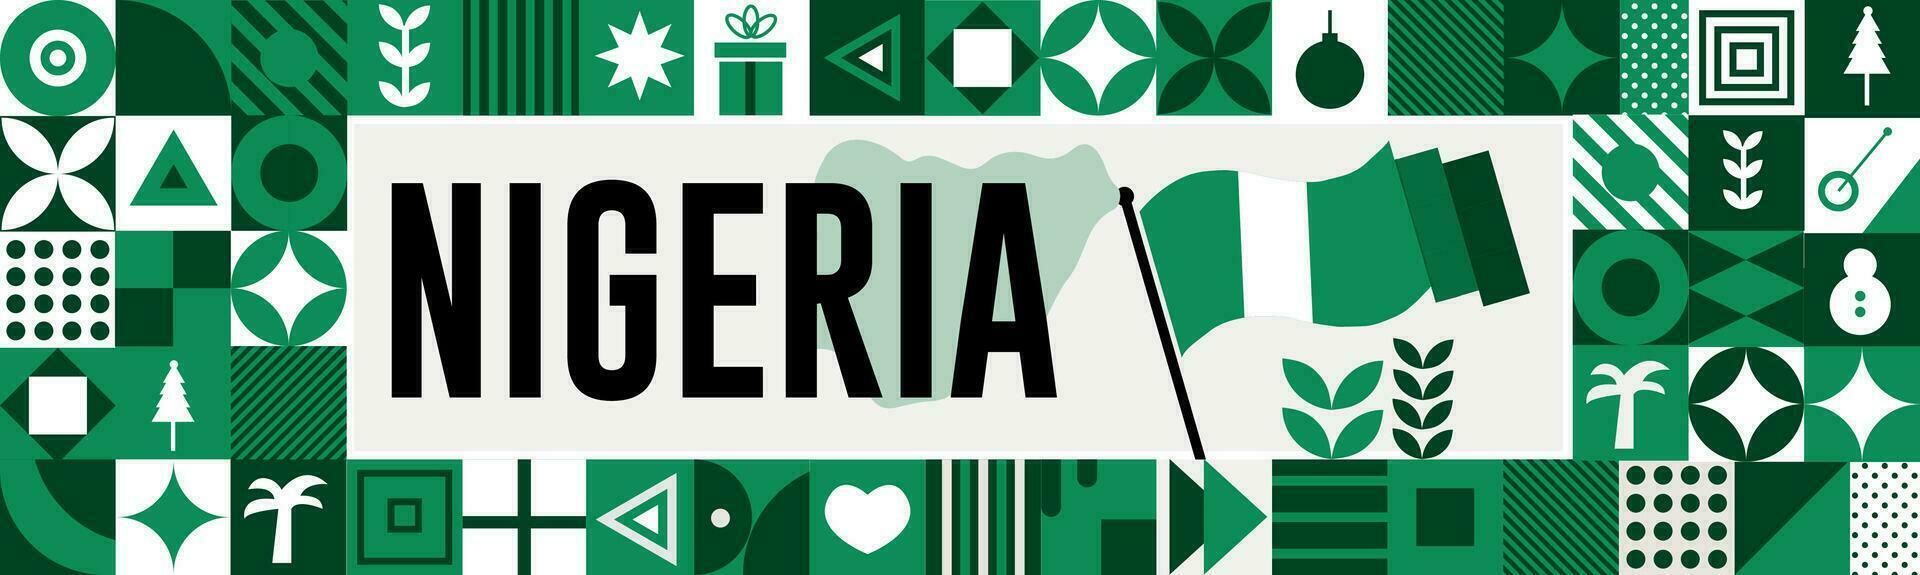 Nigeria nazionale giorno bandiera con carta geografica, bandiera colori tema sfondo e geometrico astratto retrò moderno colorfull design con sollevato mani o pugni. vettore